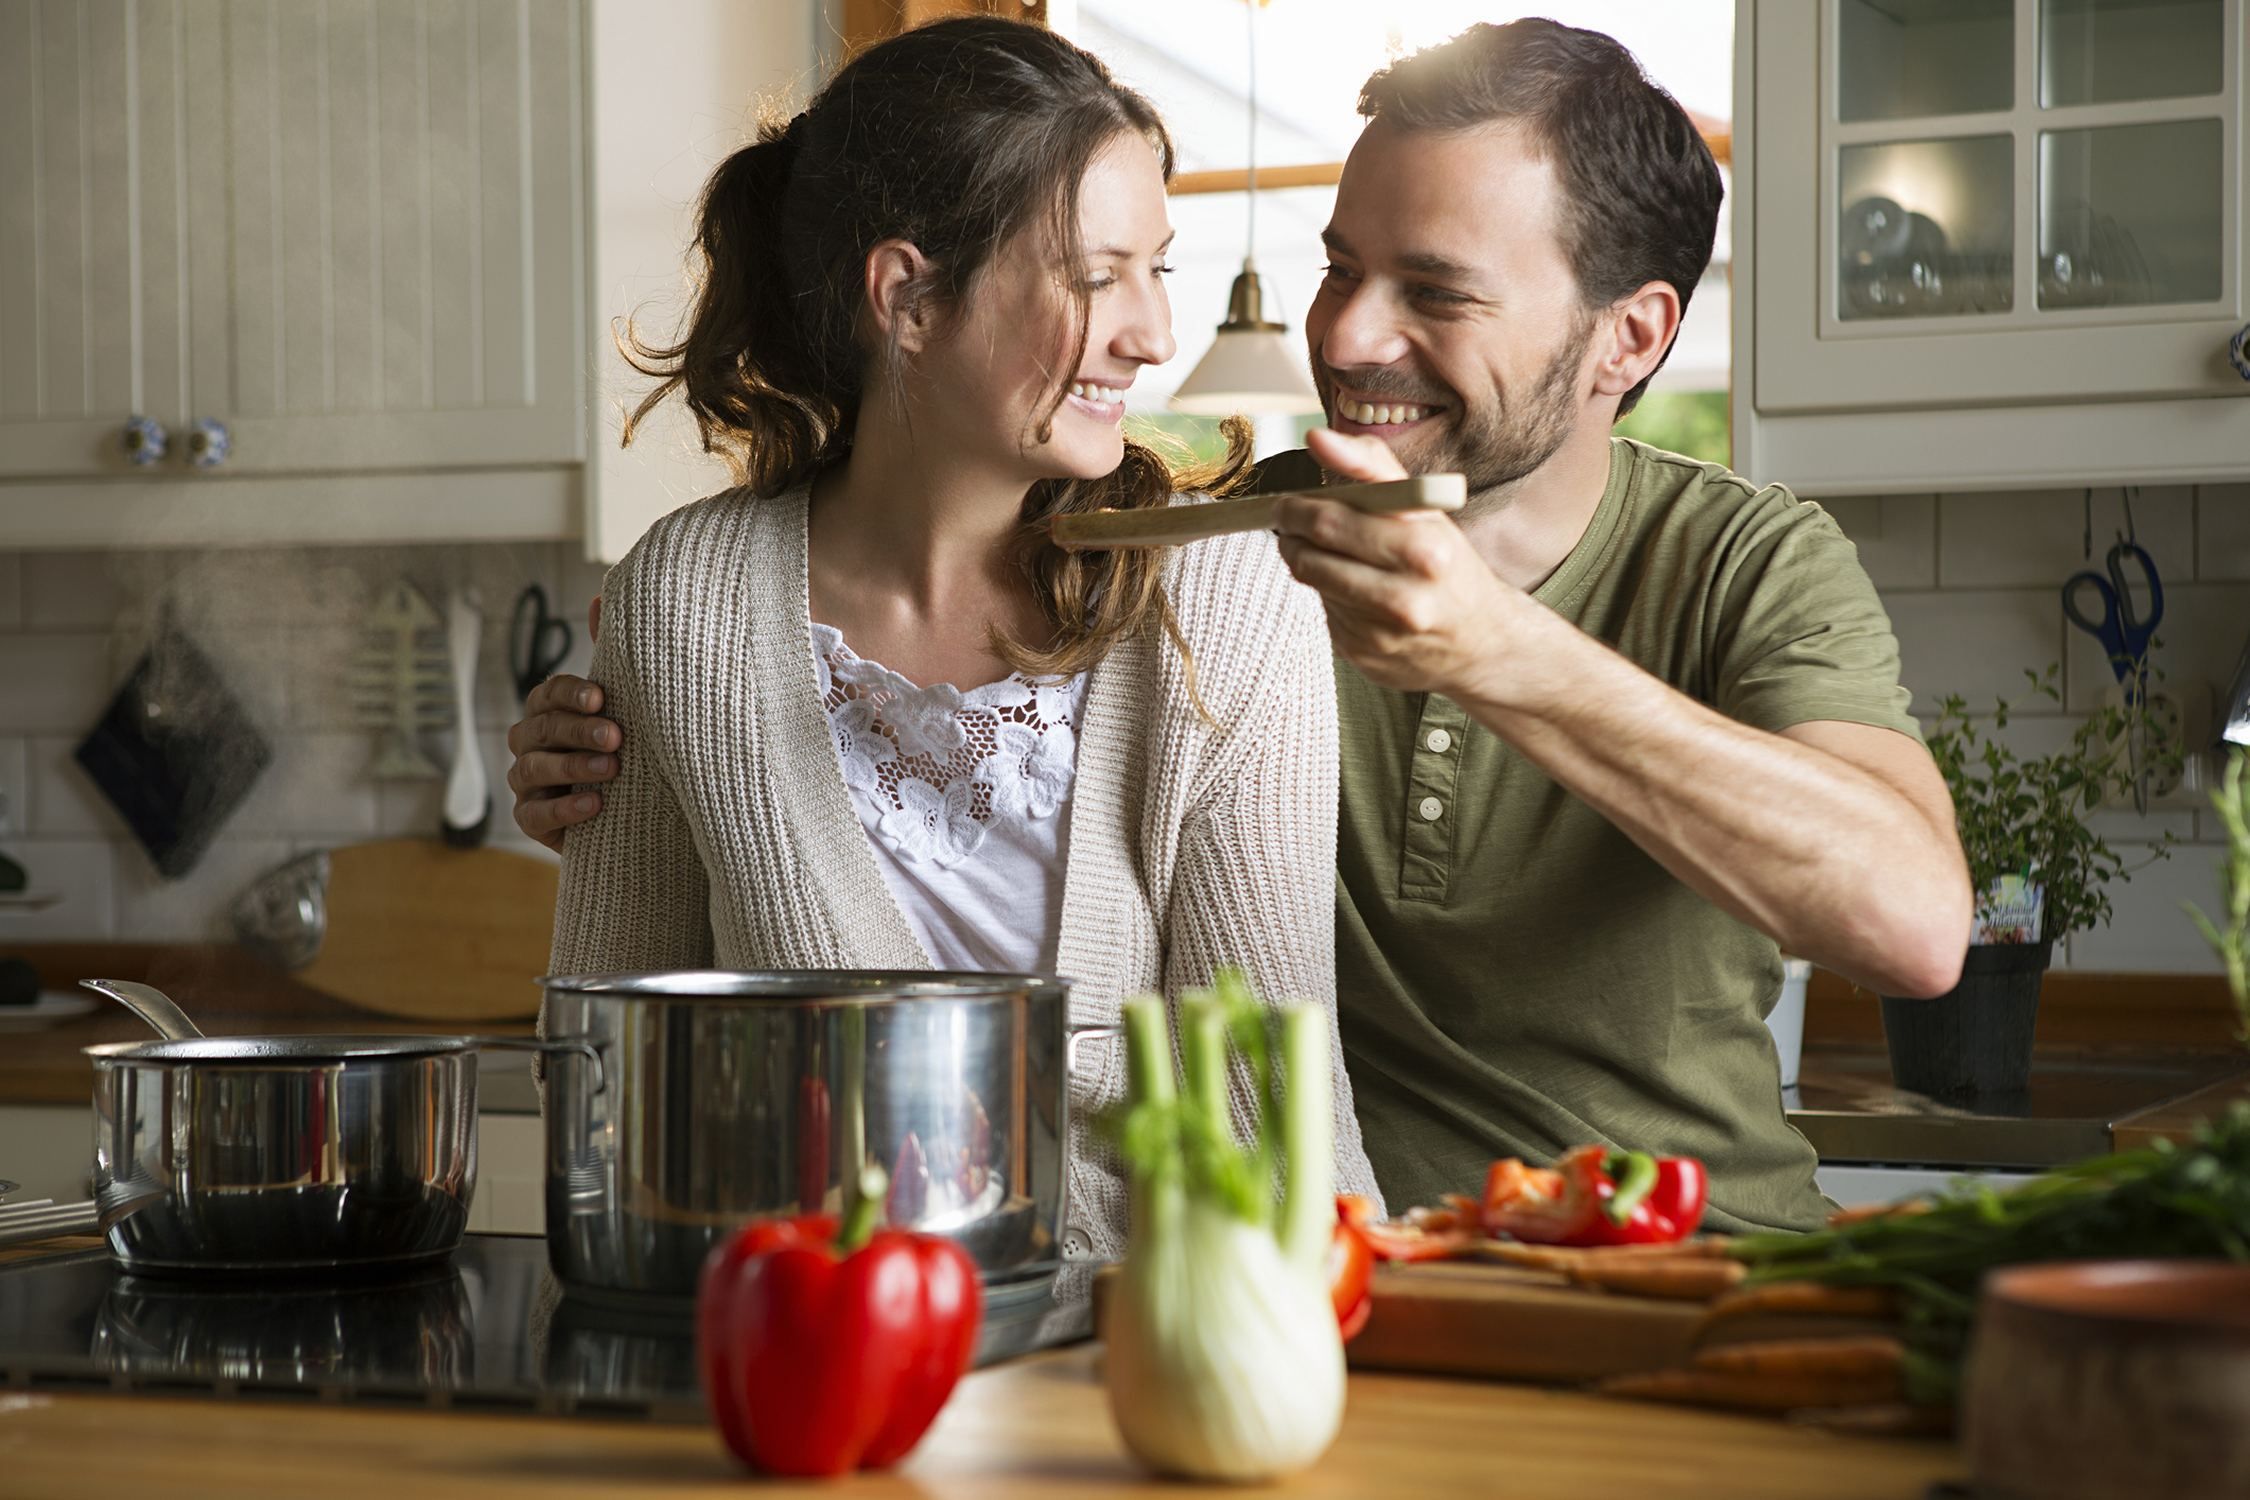 Измена мужу на кухне. Готовка на кухне. Готовим вместе. Муж и жена готовят. Семейная пара на кухне.